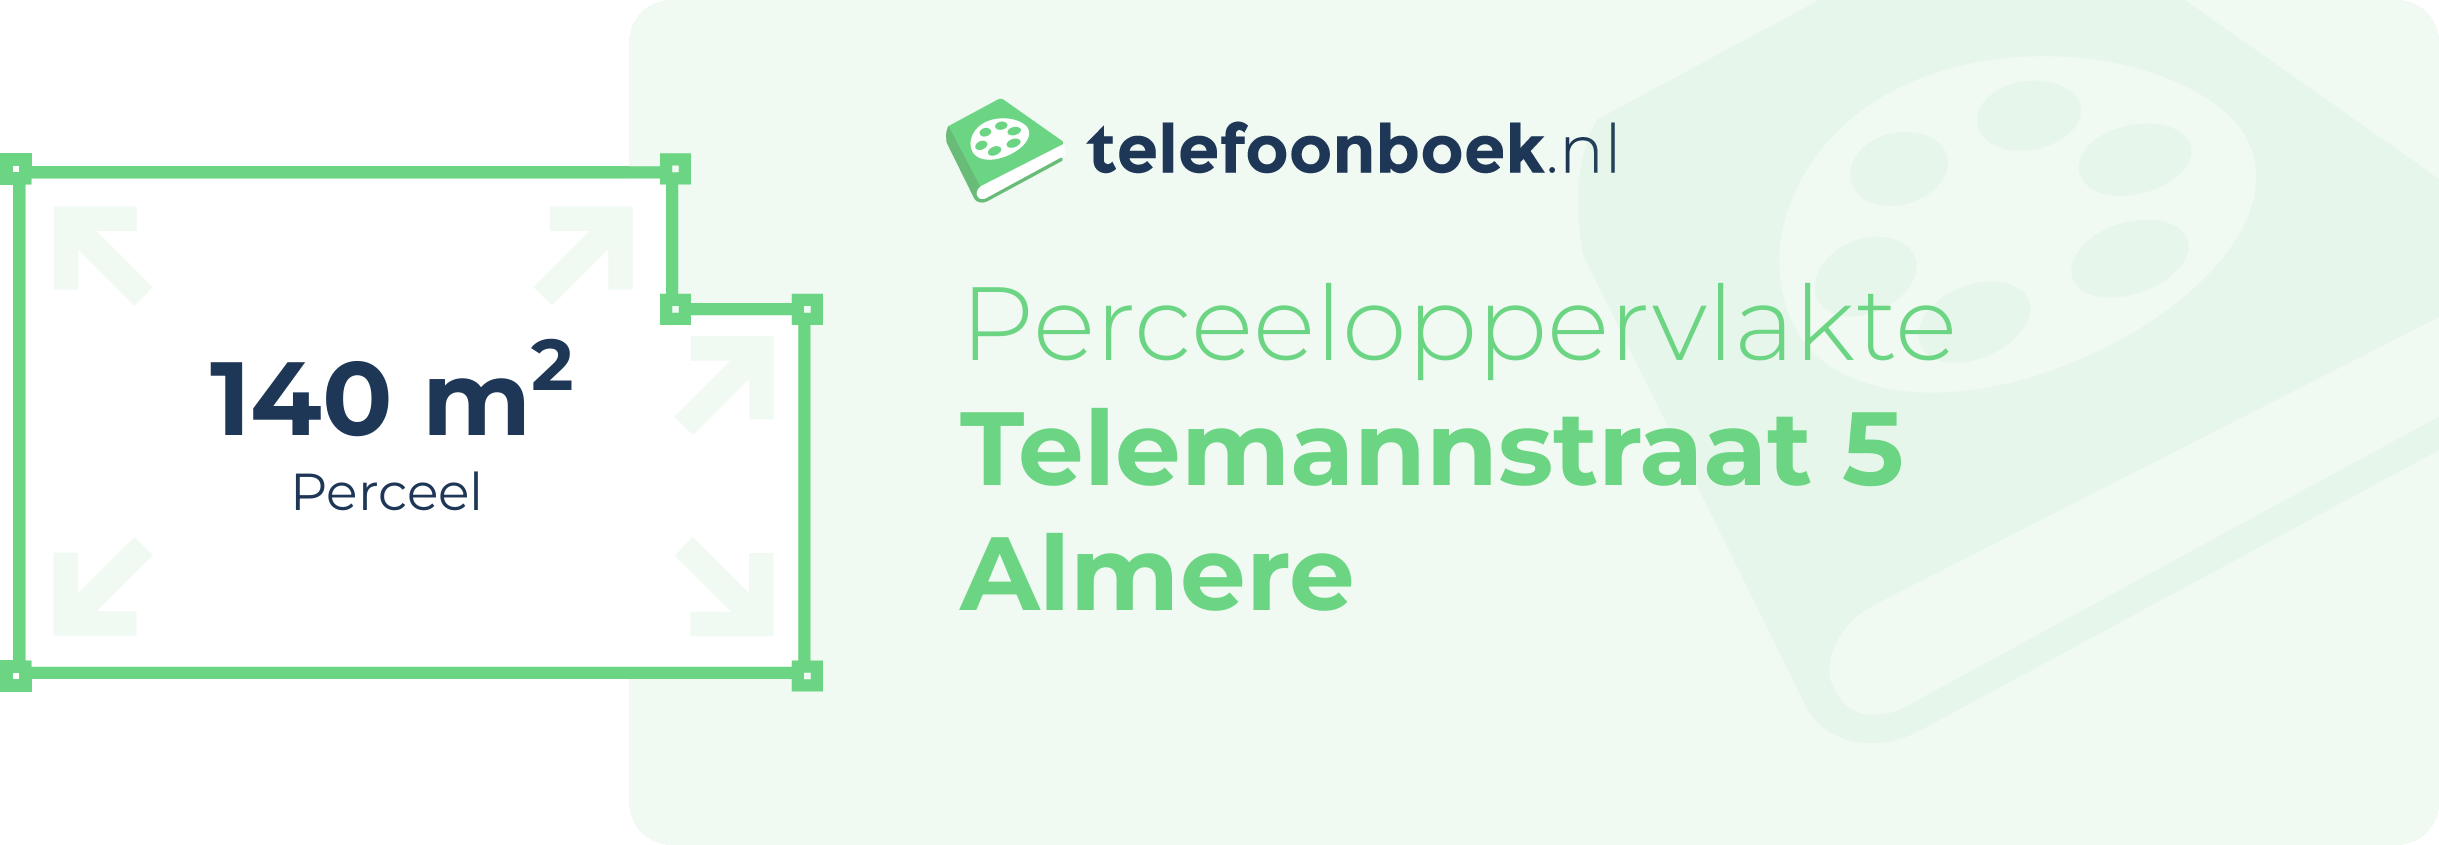 Perceeloppervlakte Telemannstraat 5 Almere